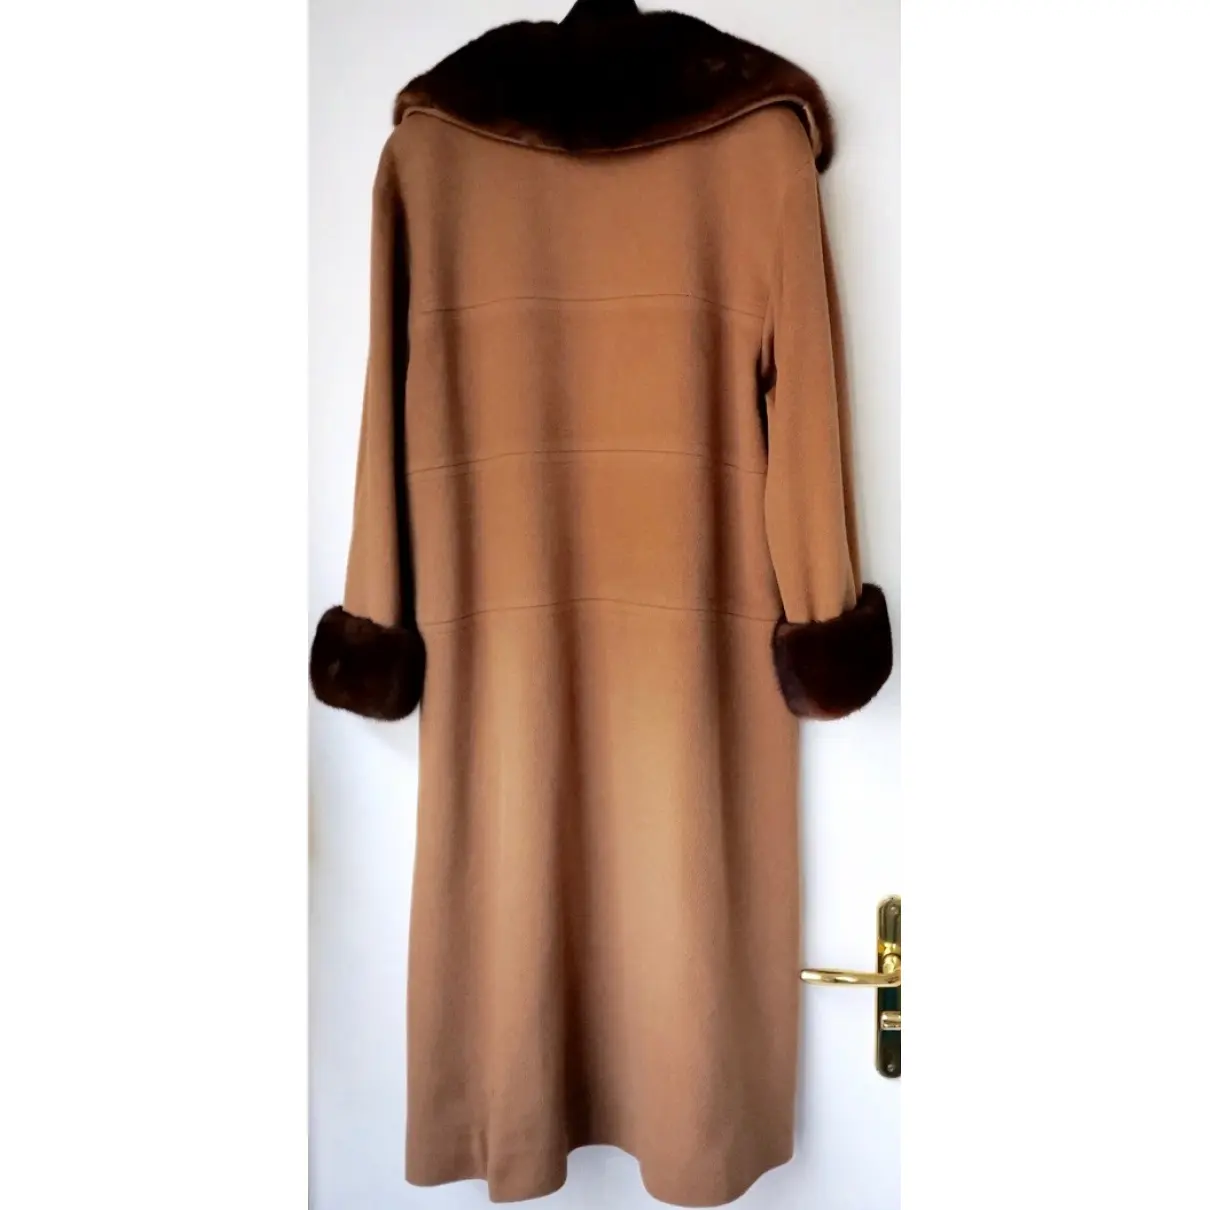 Buy Jean-Louis Scherrer Wool coat online - Vintage